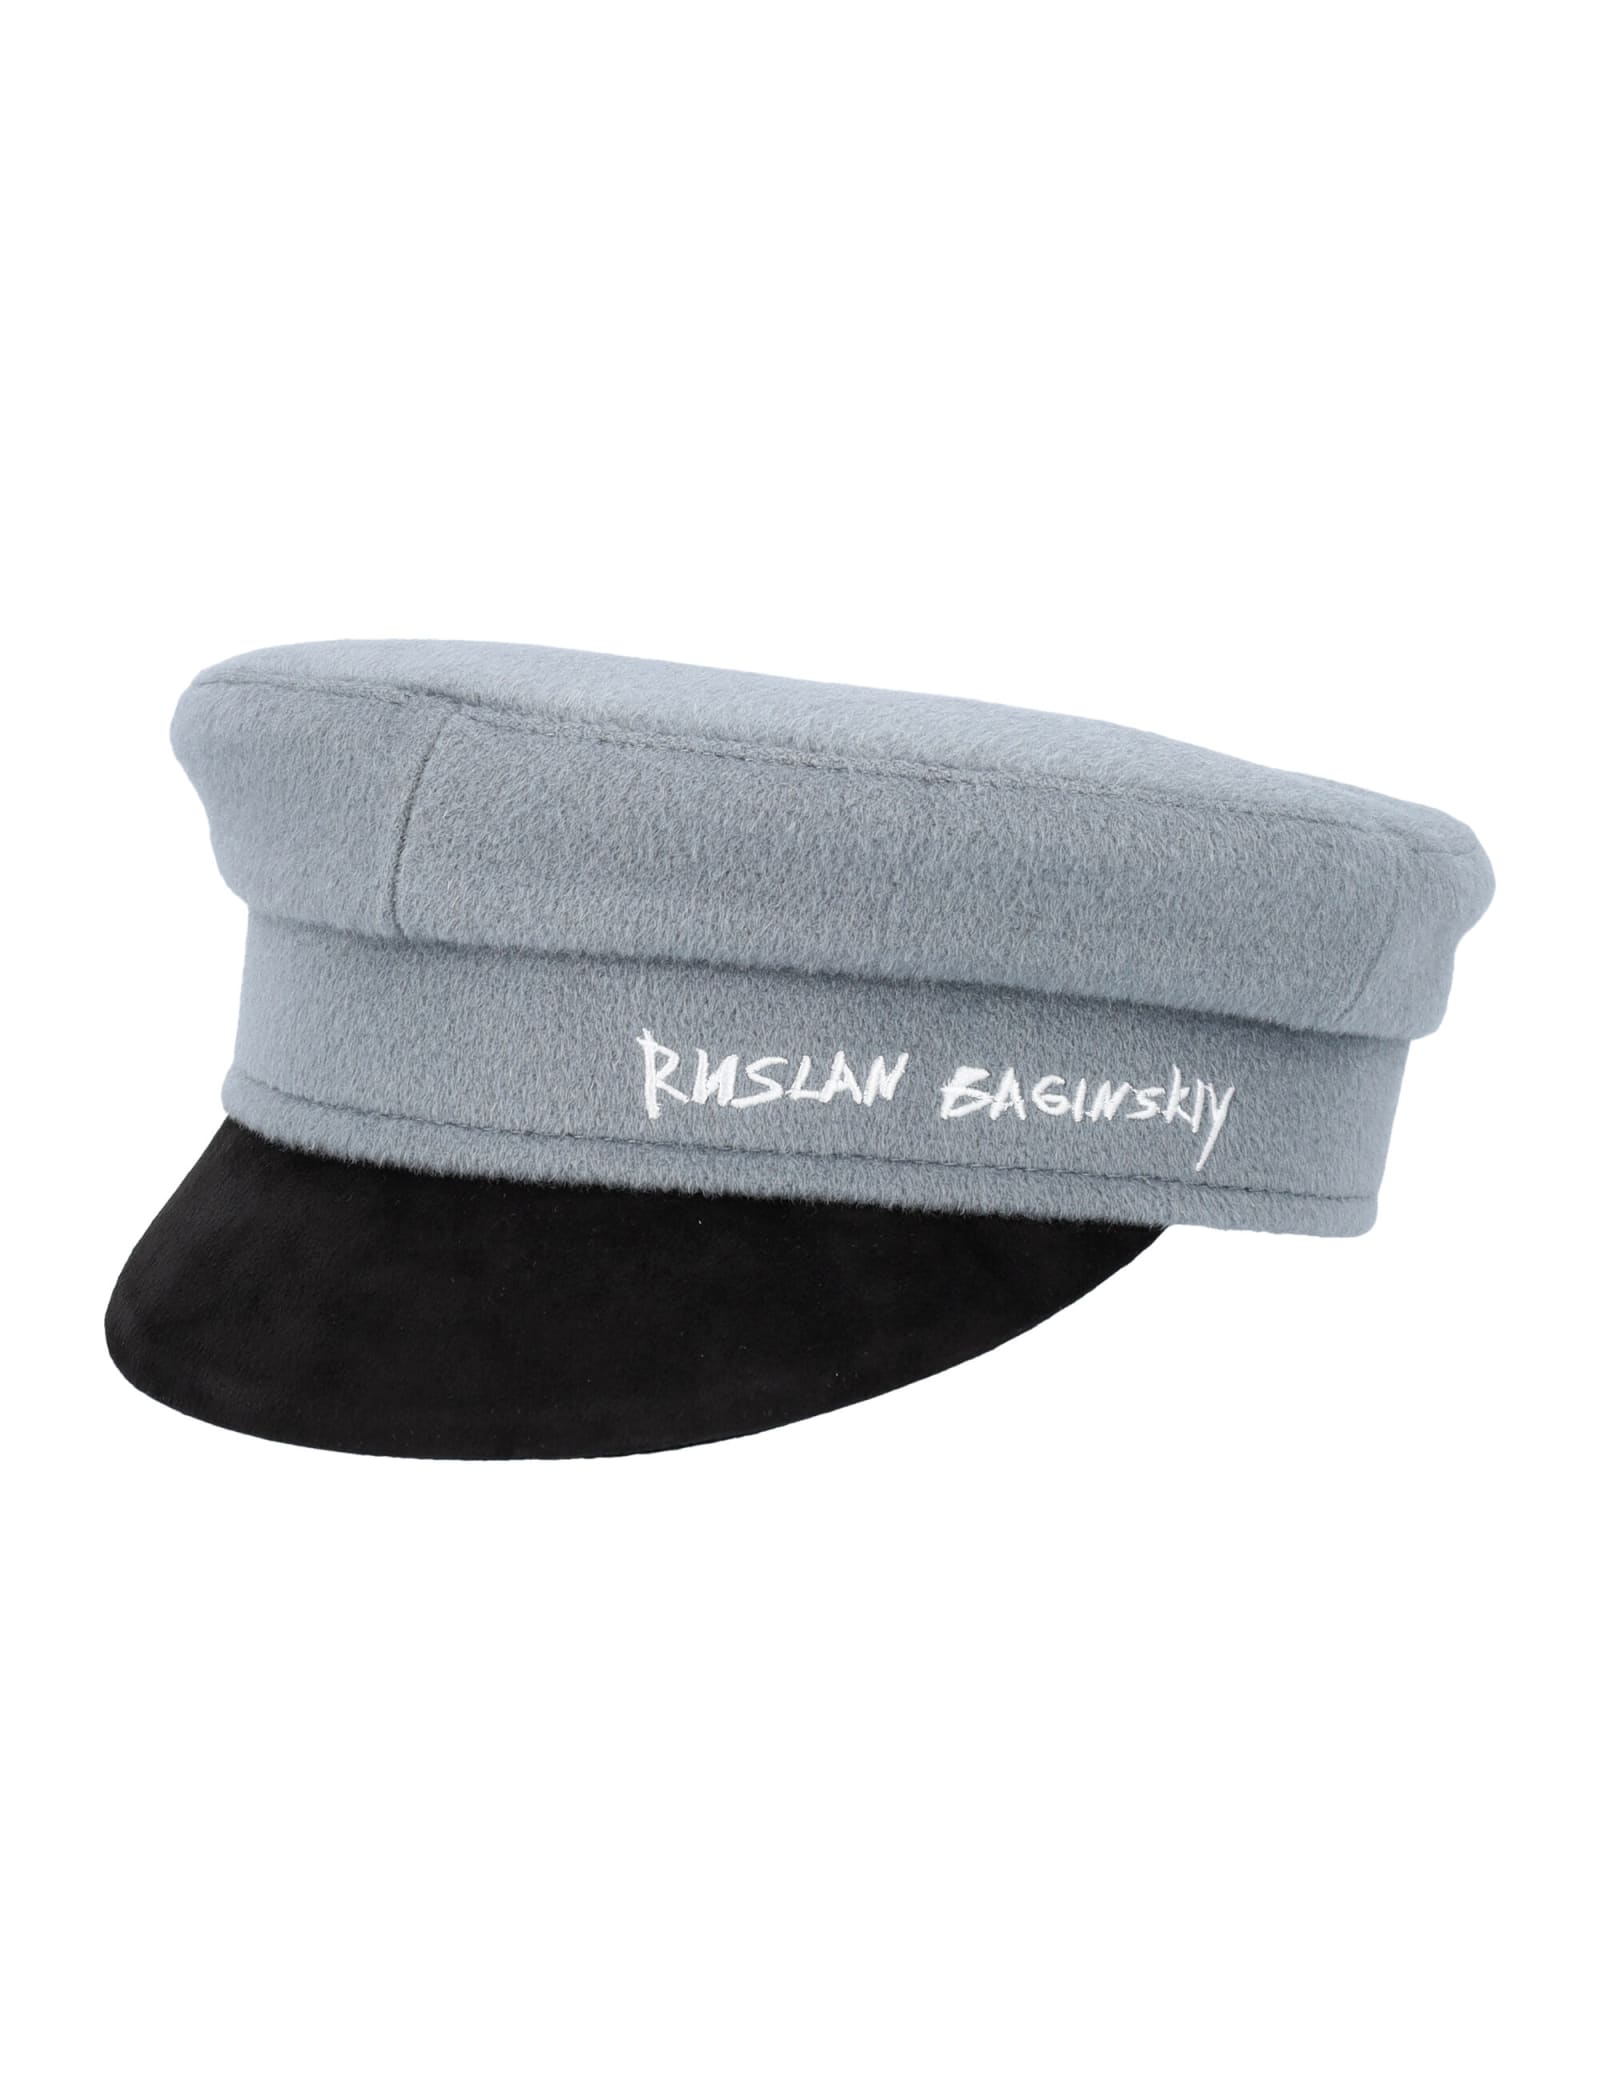 Ruslan Baginskiy Embroidered Signature Baker Boy Hat